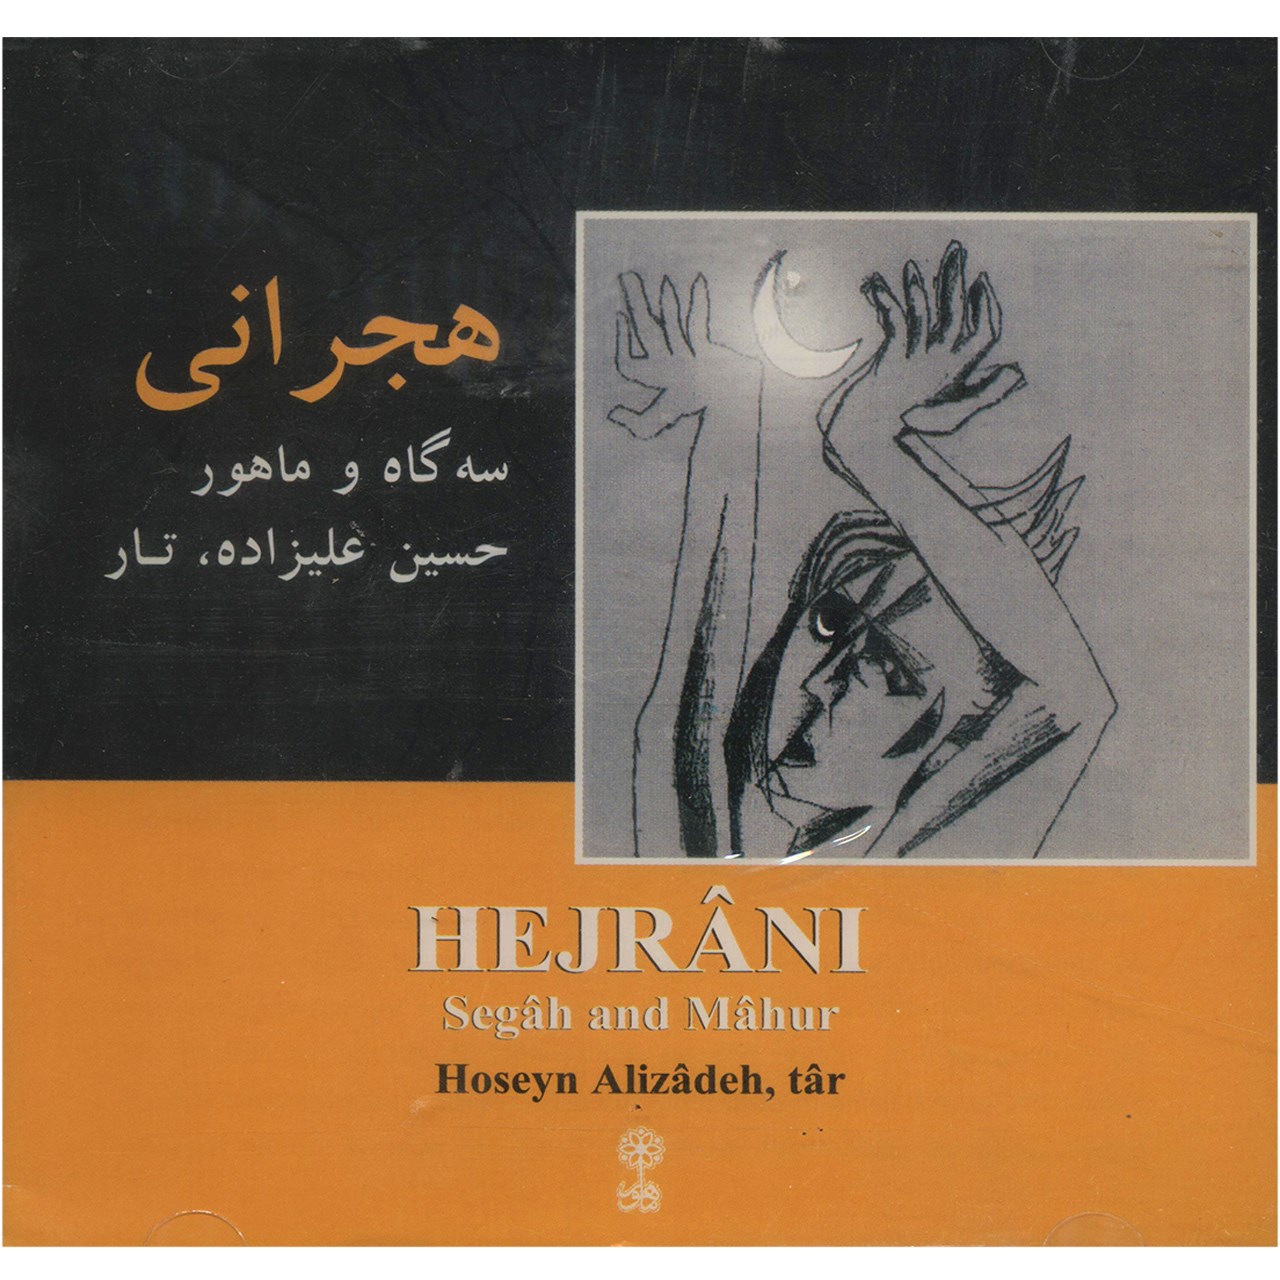 آلبوم موسیقی هجرانی - حسین علیزاده